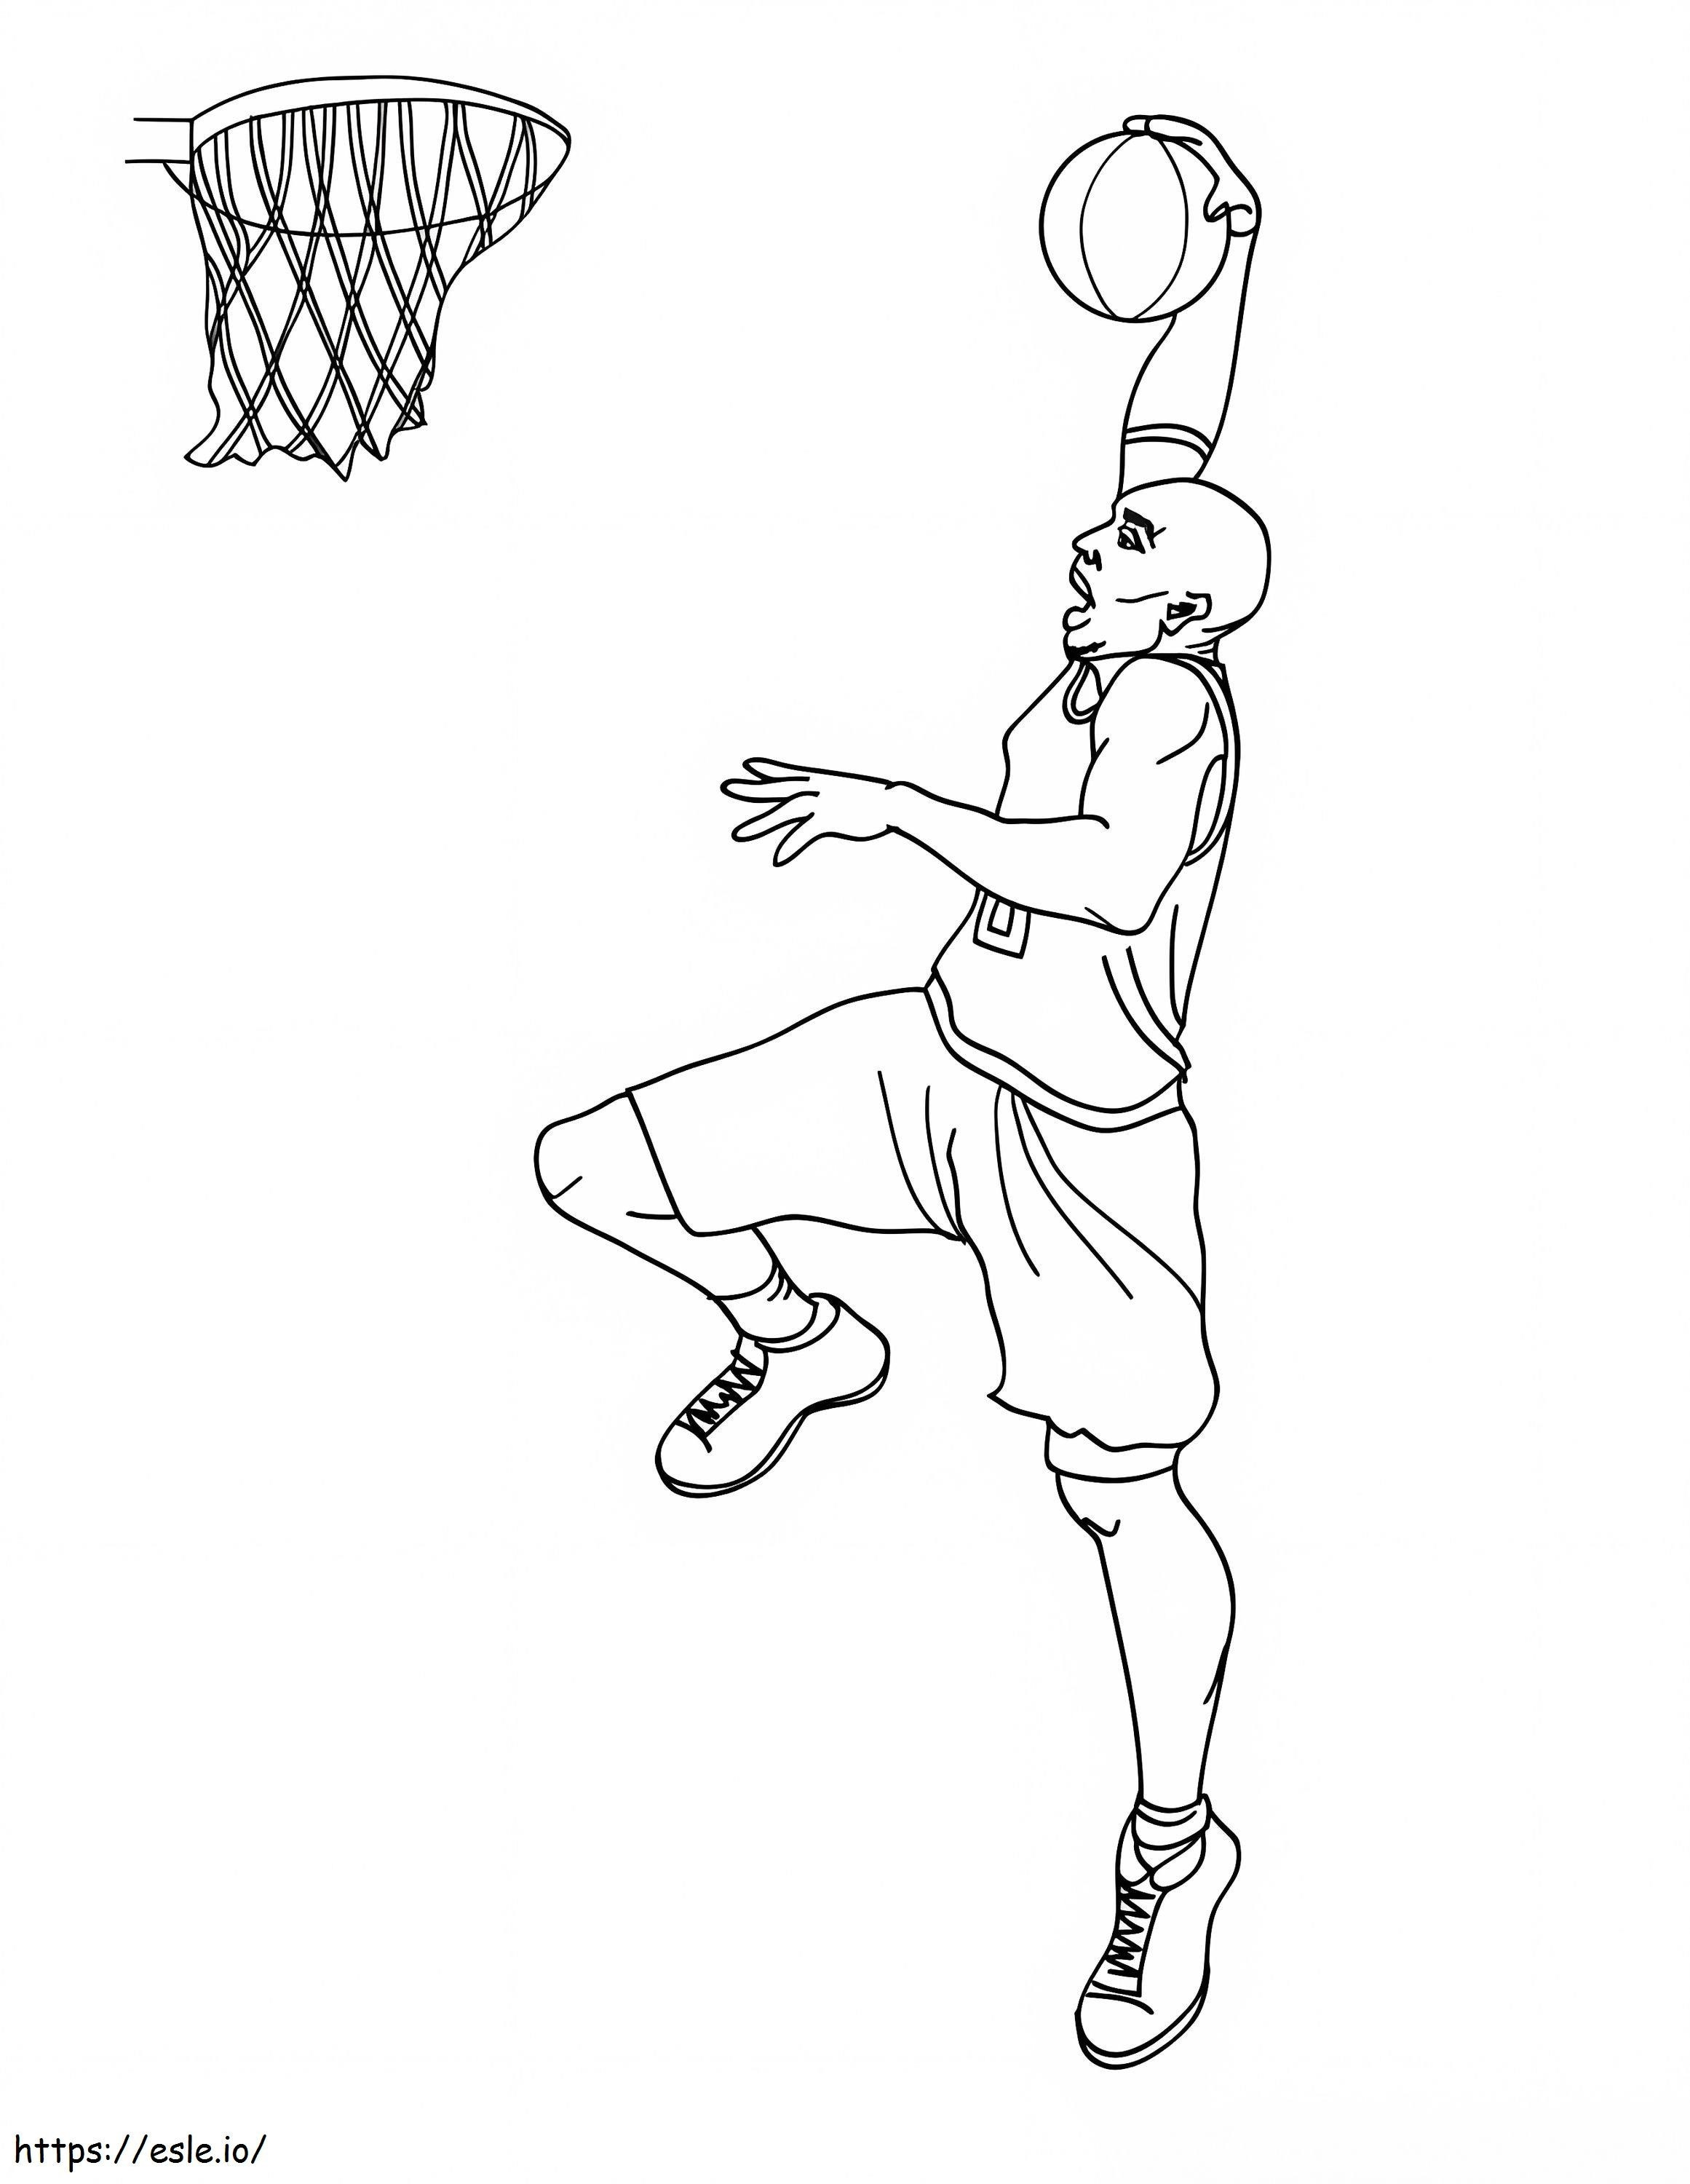 Kobe Bryant gratuit pentru a imprima de colorat